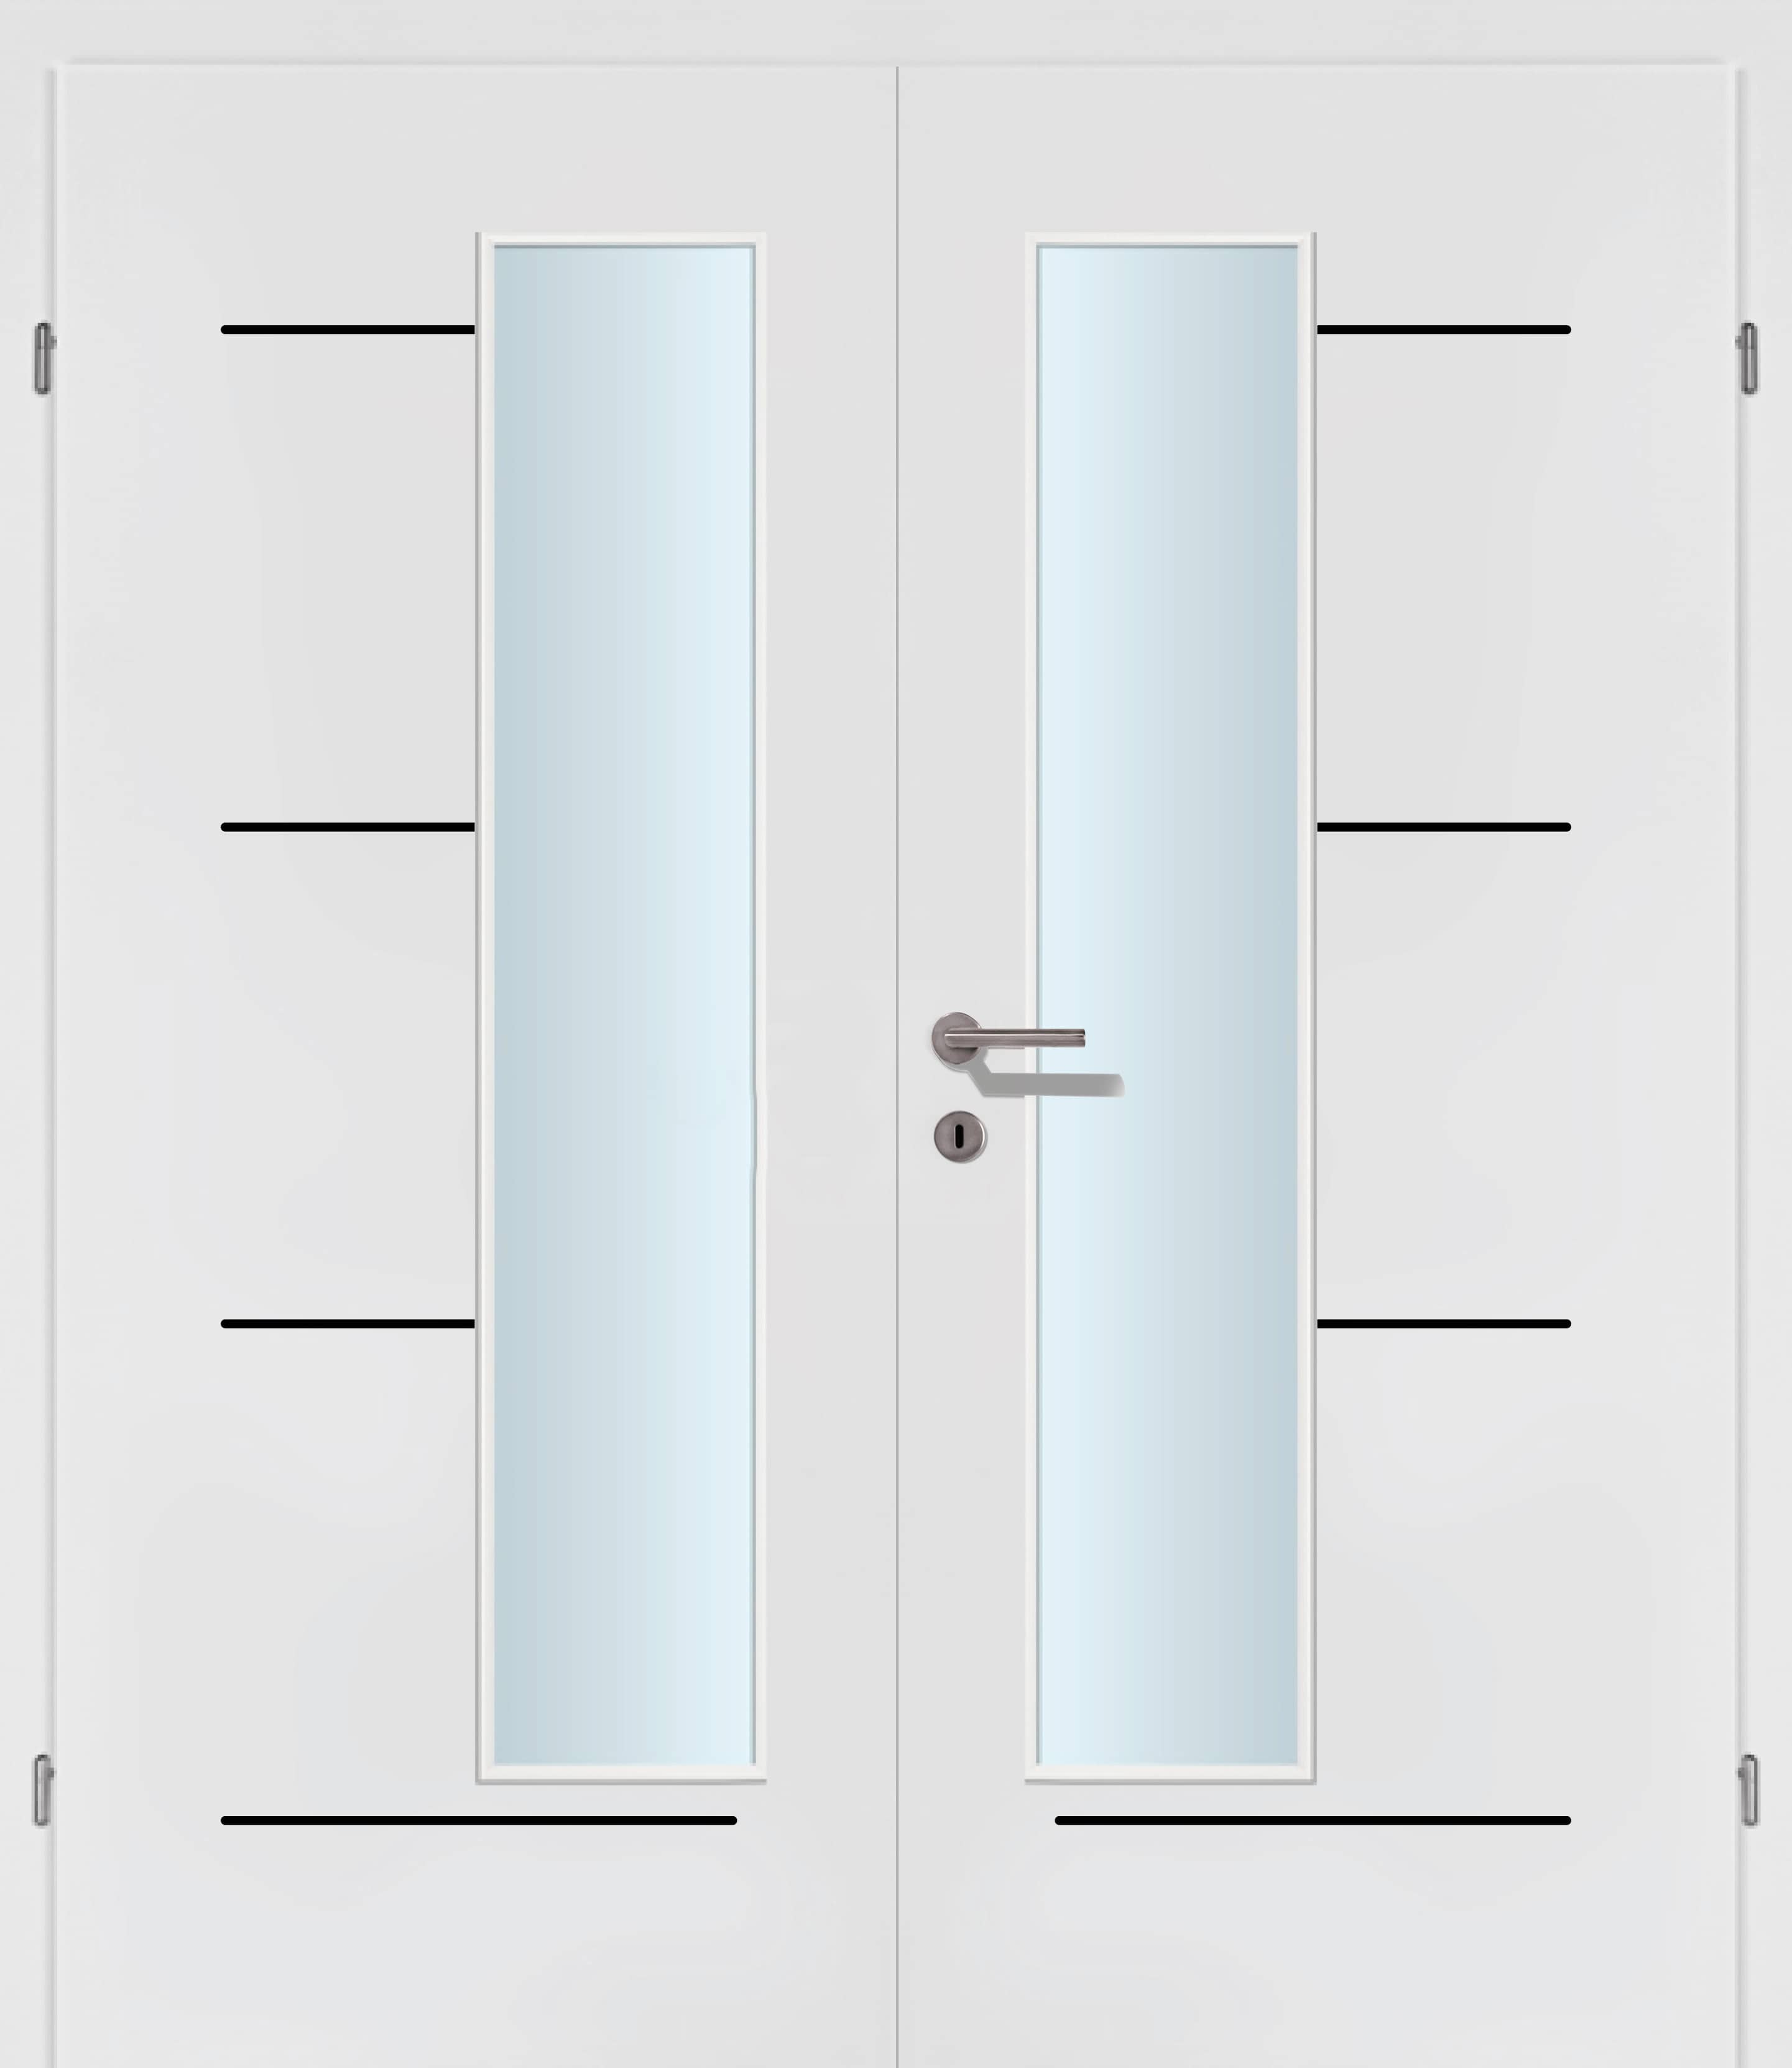 Selektion T49 Black Lisenen weiss Innentür Inkl. Zarge (Türrahmen) Doppeltüre Inkl. Glaslichte EN Drückerseitig